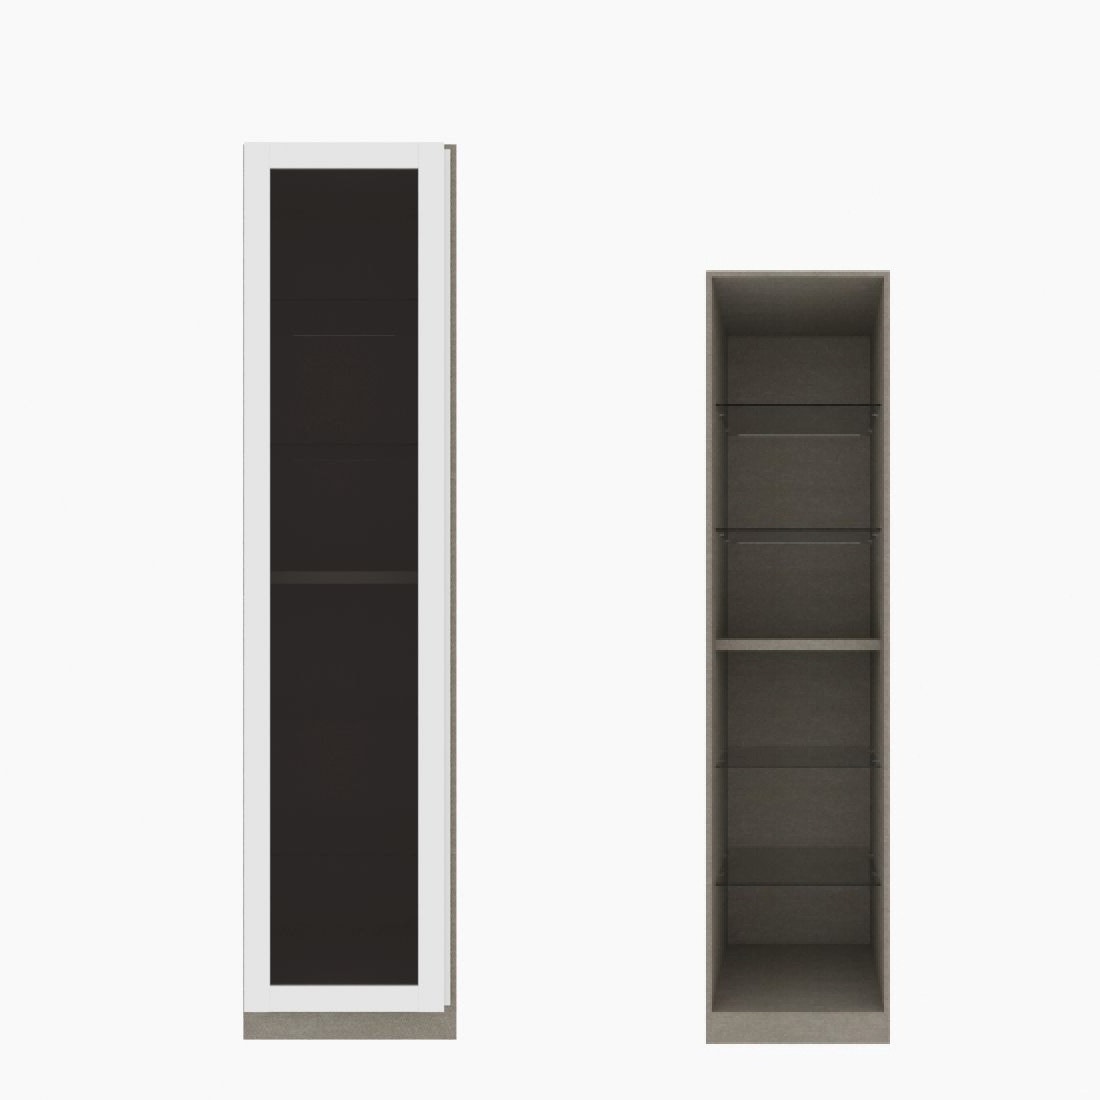 ตู้เสื้อผ้า ตู้โชว์ชั้นกระจก OP-H (หน้าบานเปิดซ้าย) ขนาด 50 ซม. รุ่น Blox สีขาว&กระจกชาดำ01